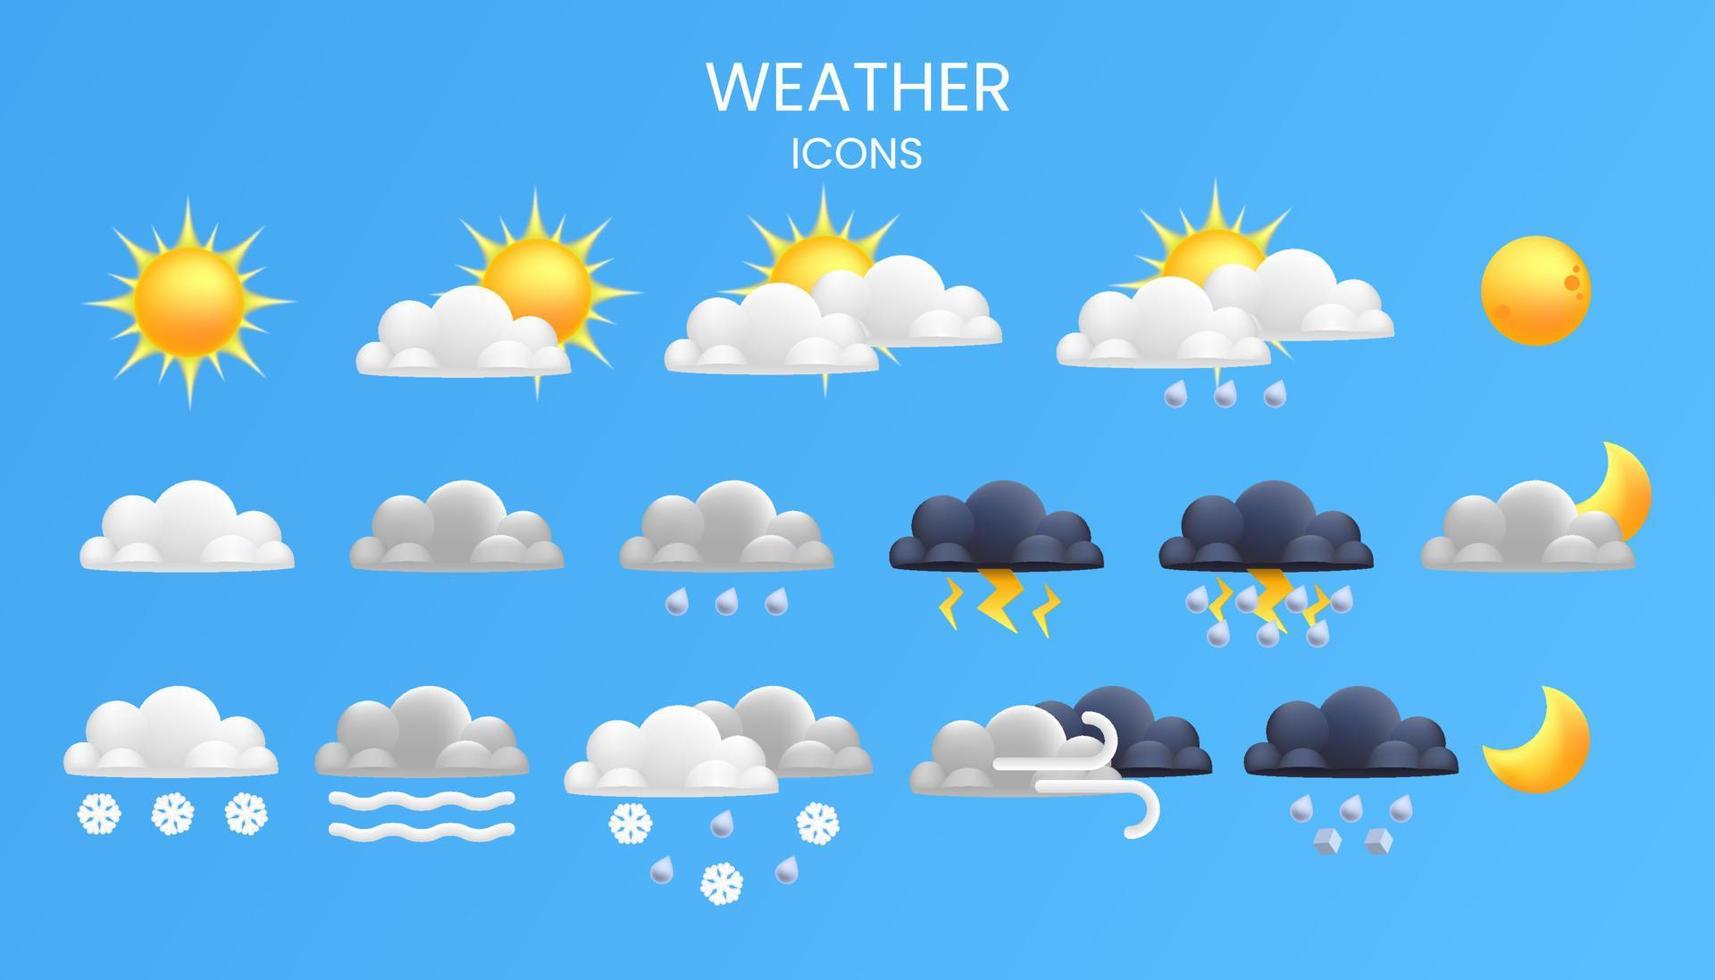 met realistisch en tekenfilm 3d pictogrammen van zon, maan, regenen, sneeuw, wolken en onweer, deze reeks is perfect voor weer interfaces, weer app of website vector